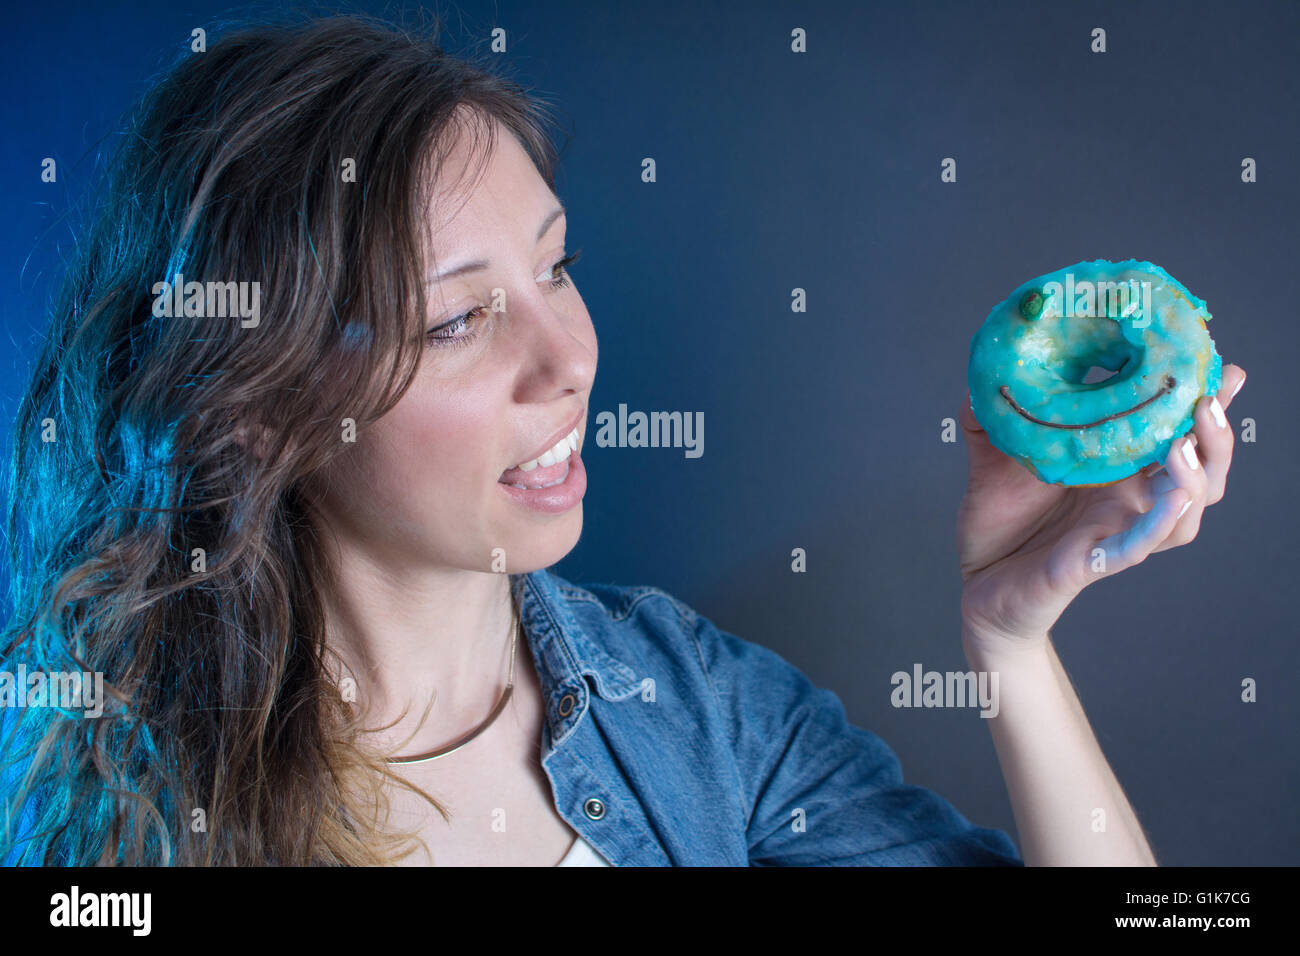 Mädchen hält einen blauen Smiley-Gesicht-Donut Stockfoto